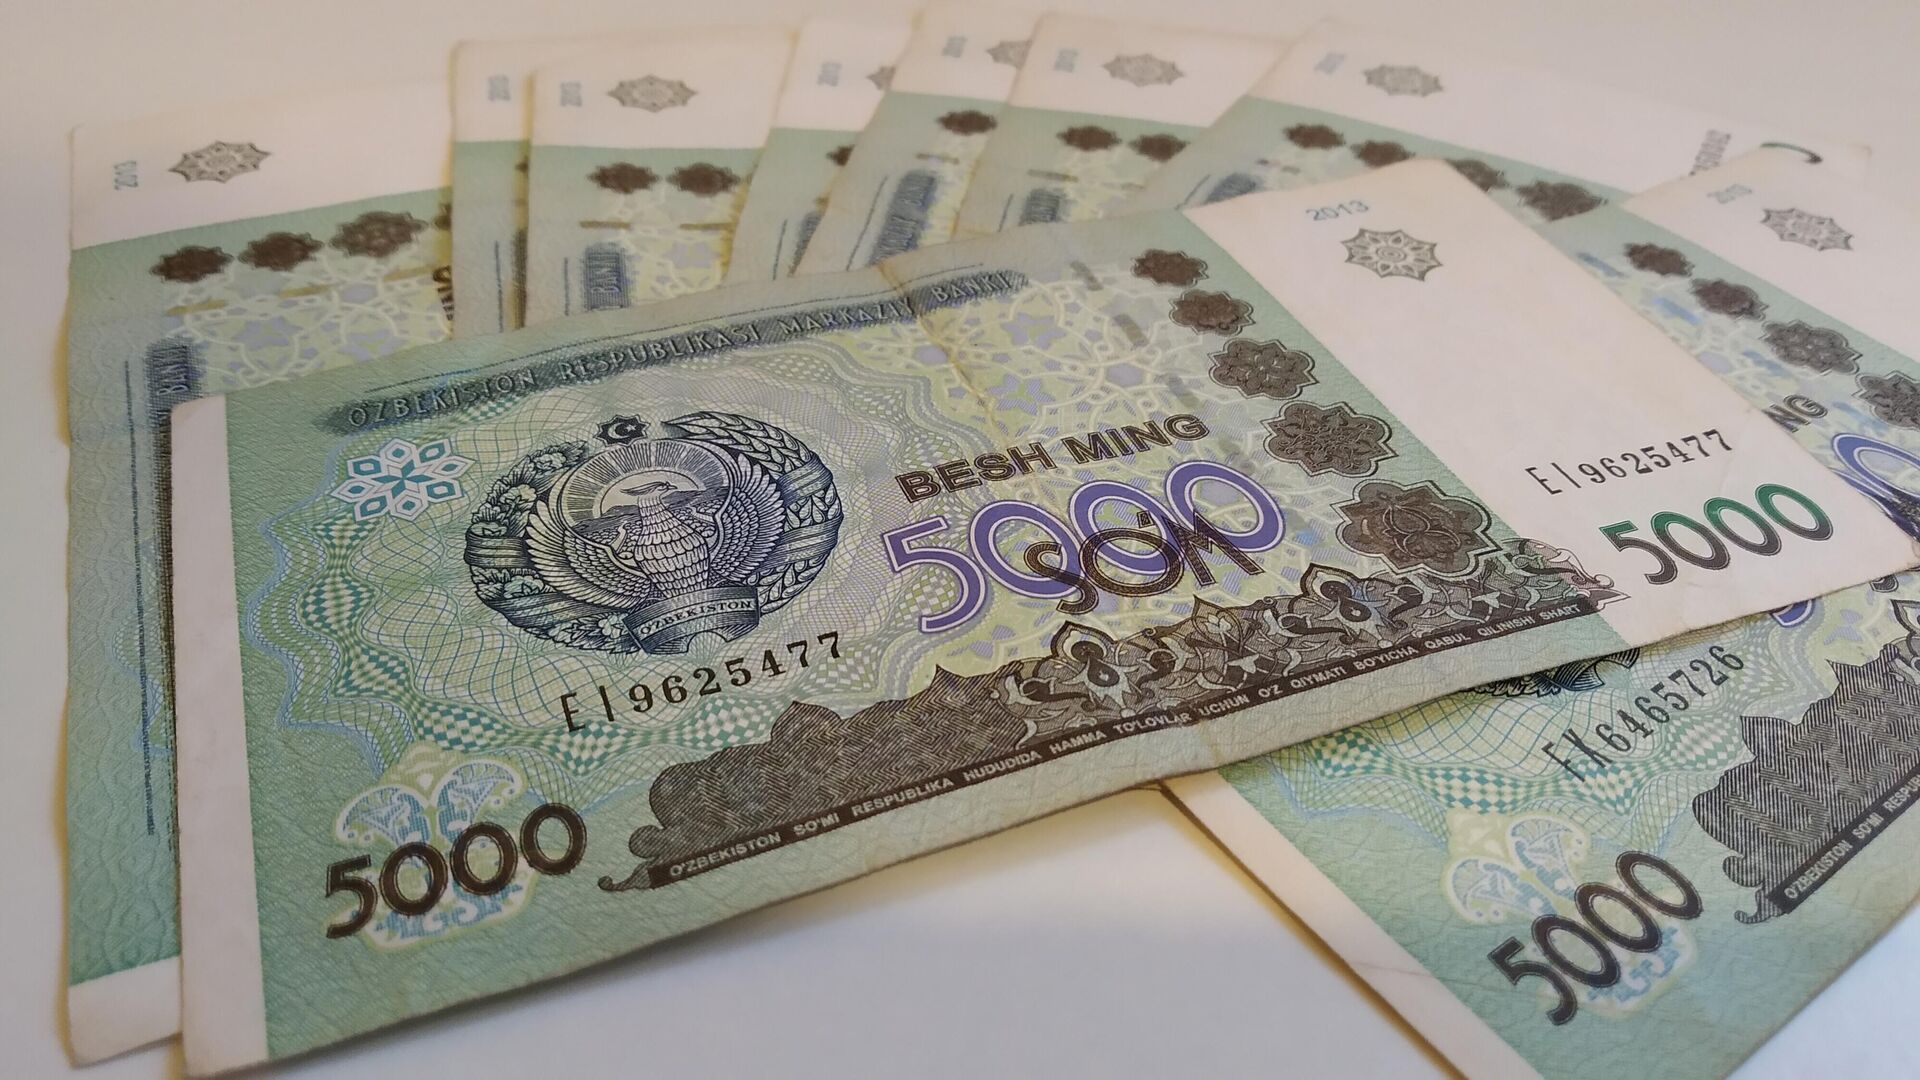 Узбекские деньги, 5000 сумов - Sputnik Узбекистан, 1920, 21.12.2021